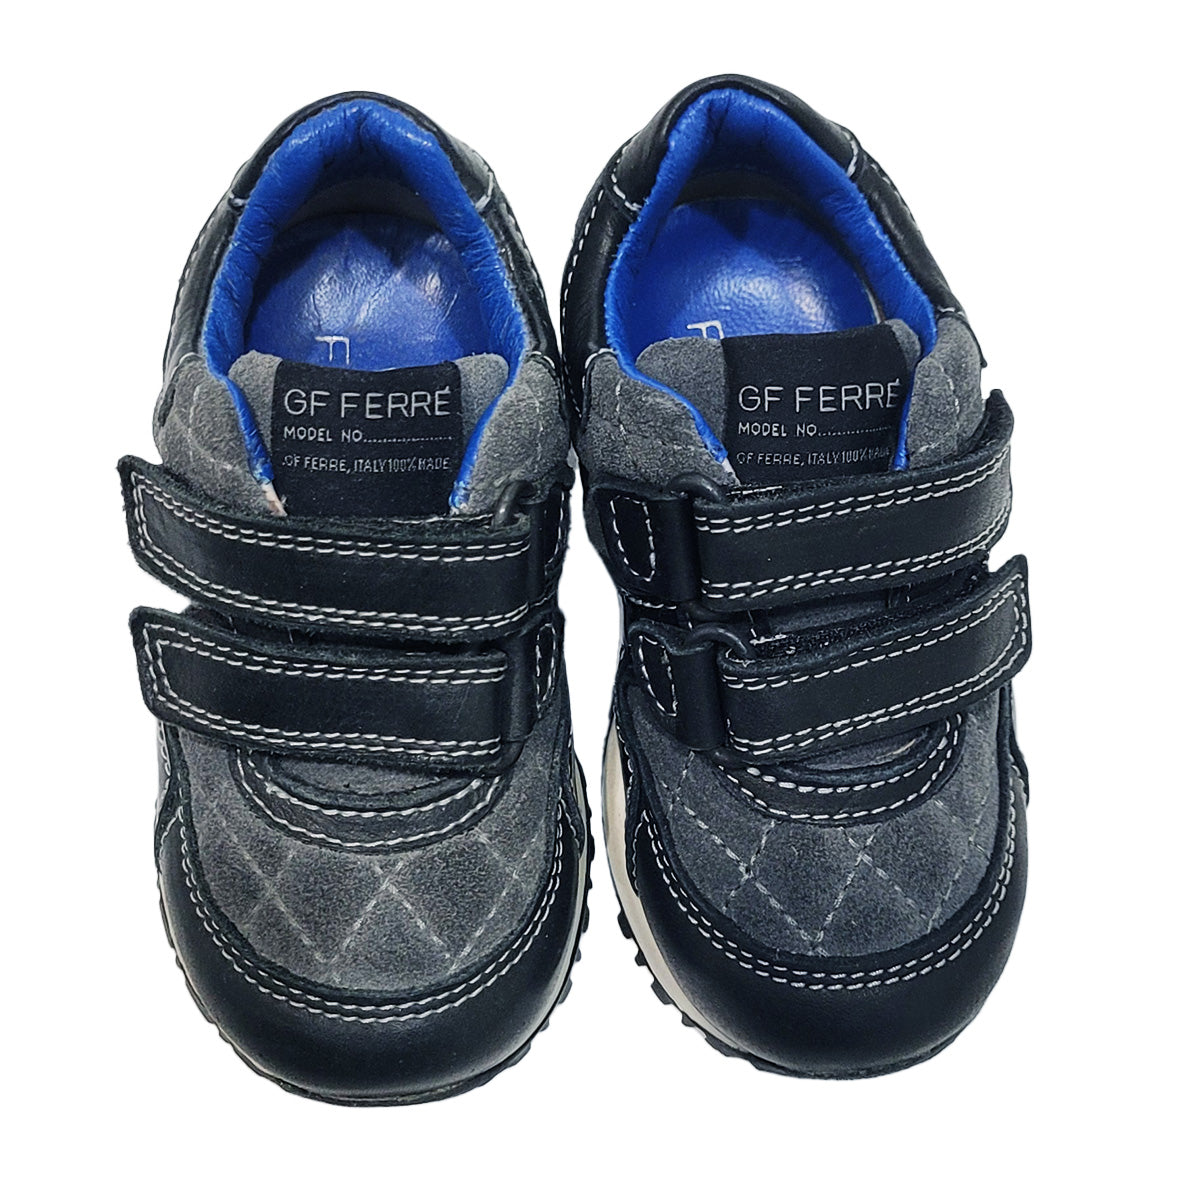 GF Ferre Shoe